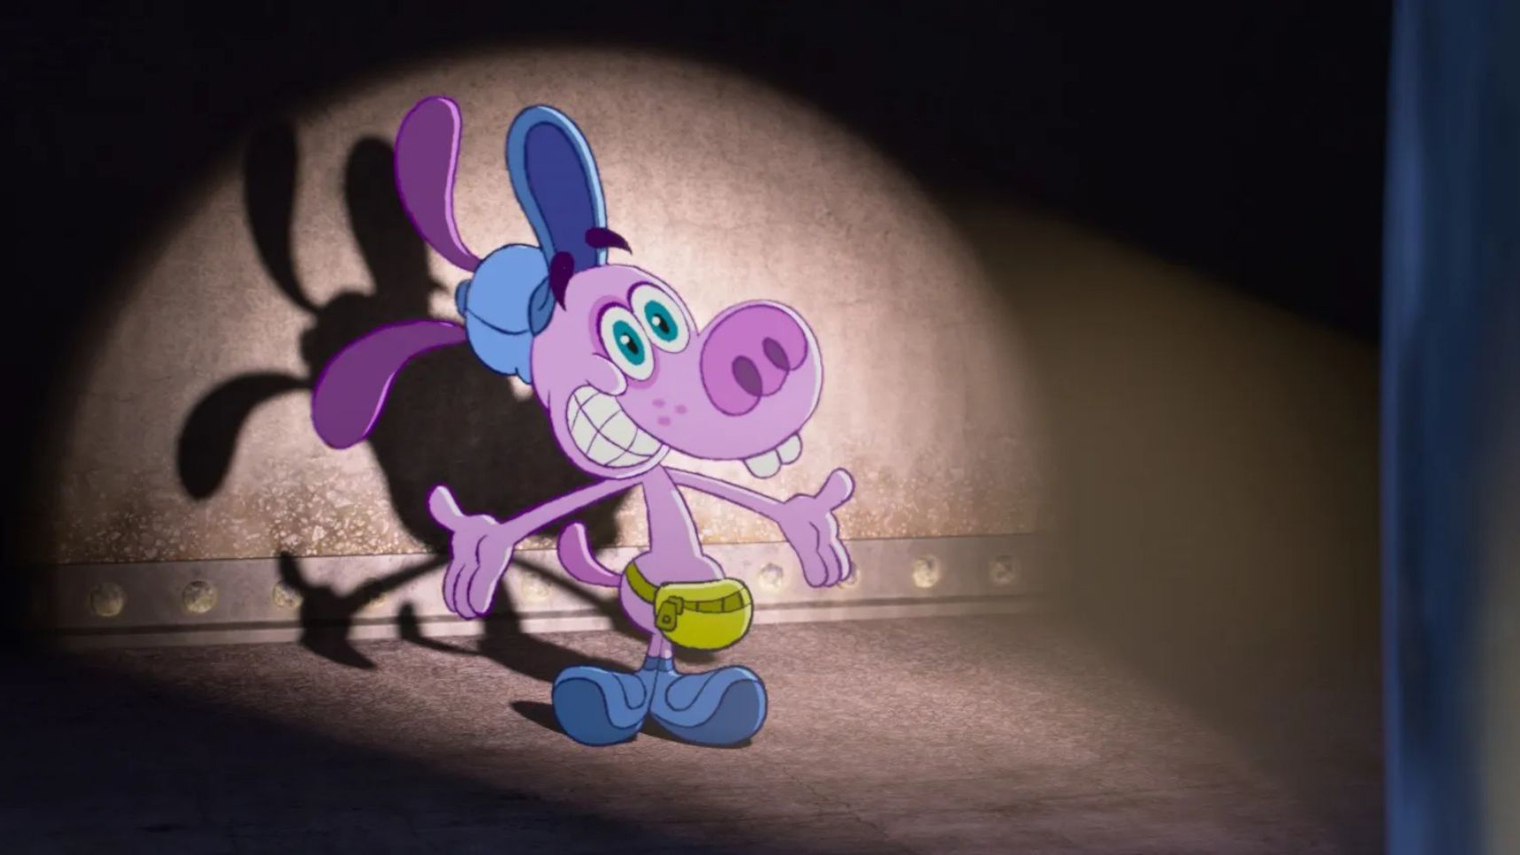 В мультфильме происходит слом четвертой стены благодаря новому 2D-персонажу — Блуфи. Он иногда обращается к зрителям, как Даша⁠-⁠путешественница. Героя придумал художник и аниматор Дин Хизен, который работал над другим мультфильмом Pixar — «Базз Лайтер»